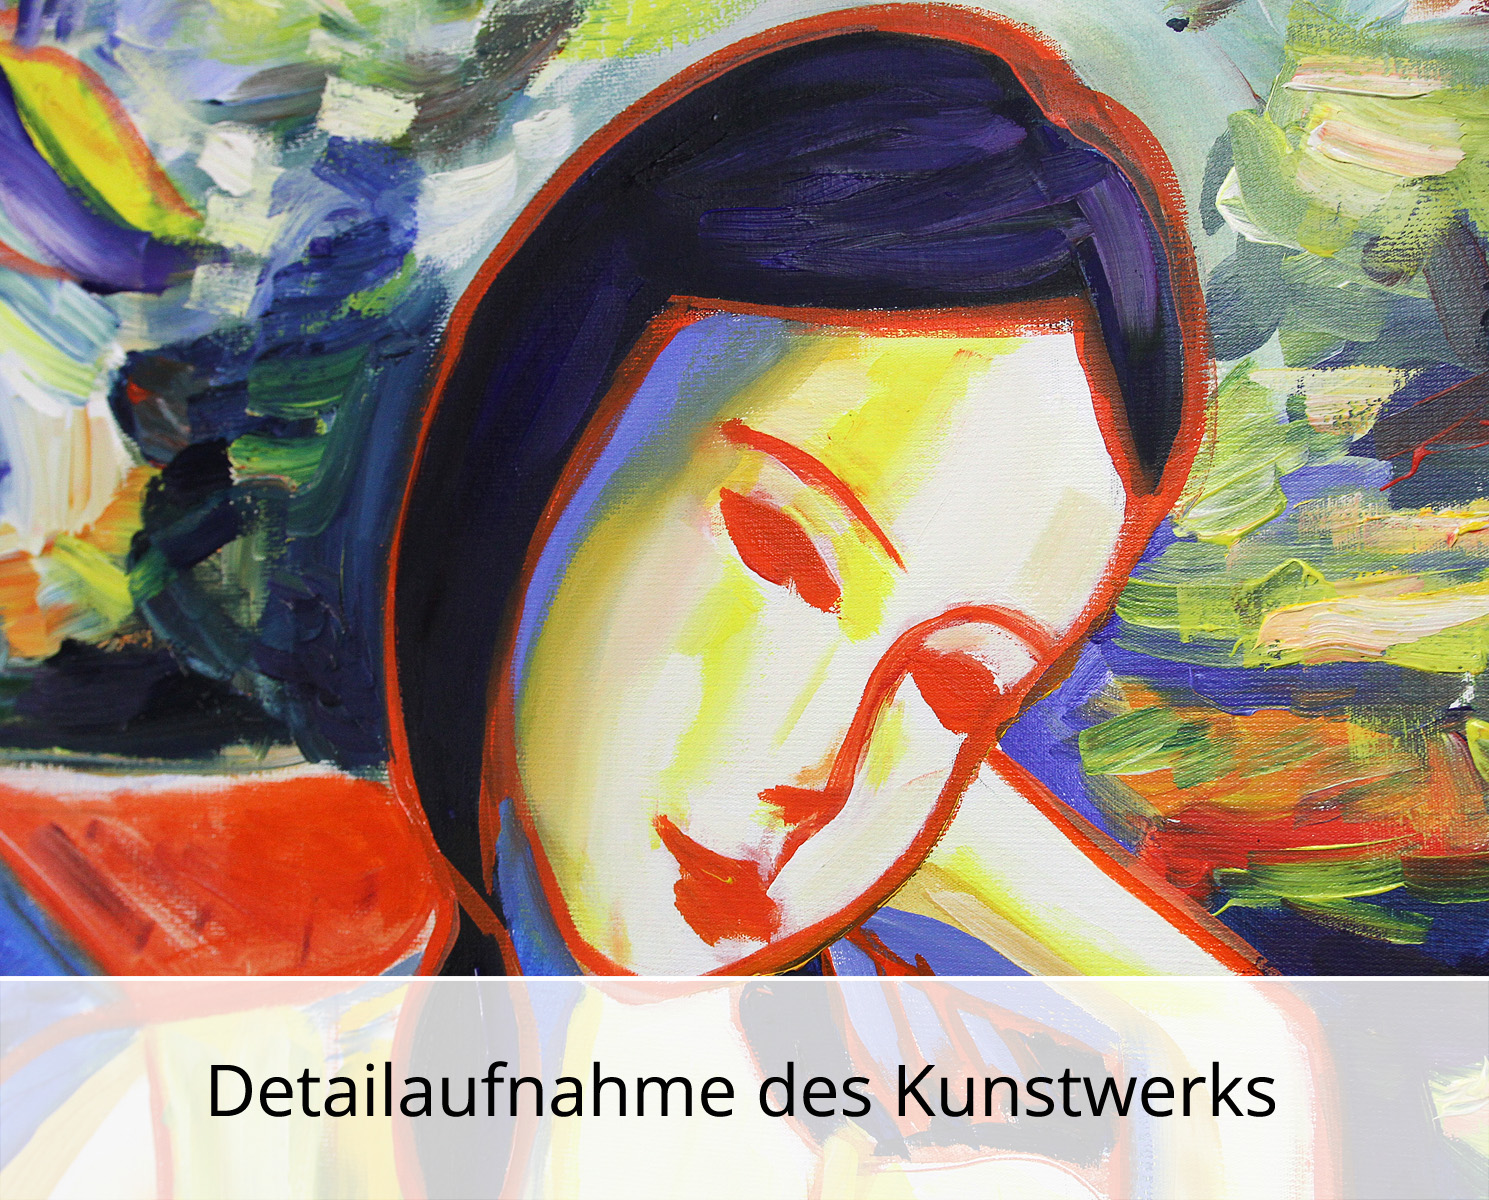 M. Cieśla: "Mädchen im Garten VI", Original/Unikat, Expressionistisches Ölgemälde